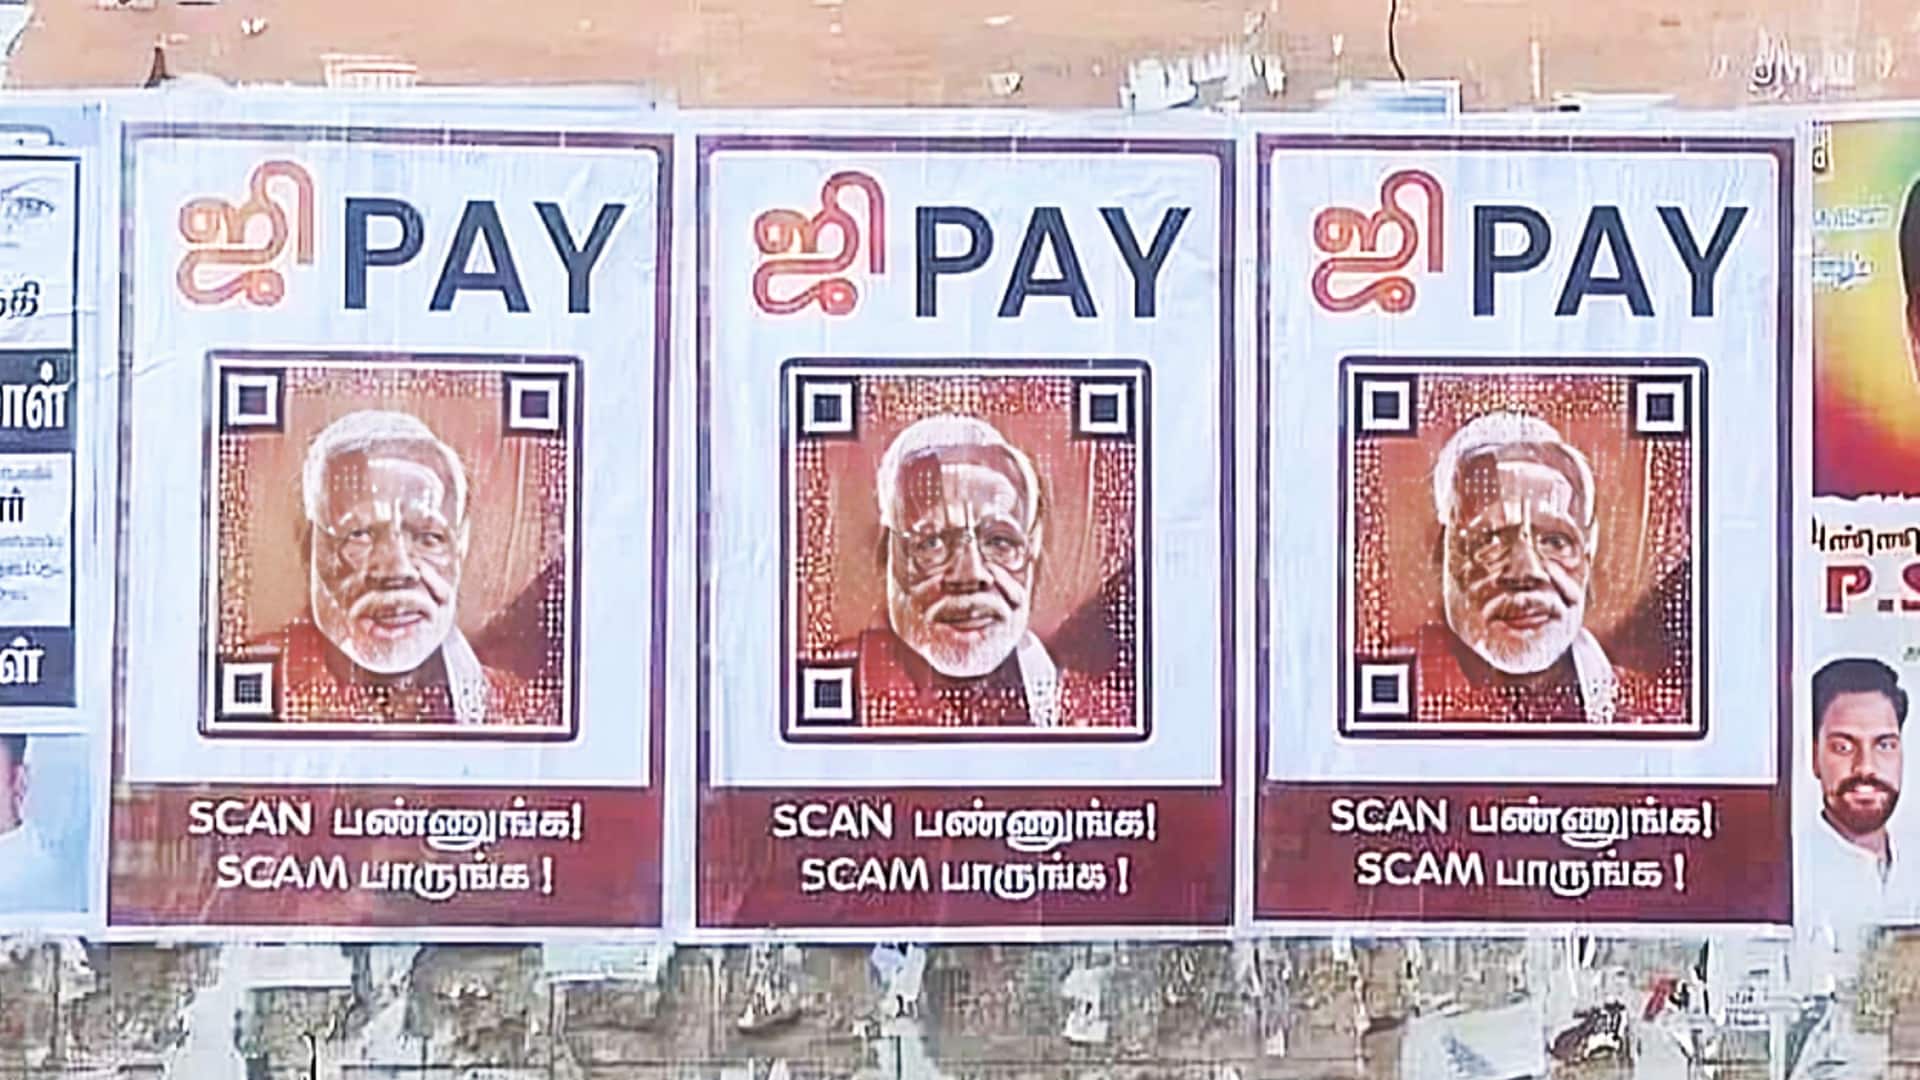 तमिलनाडु: प्रधानमंत्री मोदी की तस्वीर वाले QR कोड लगाए गए, स्कैन करने पर "भ्रष्टाचार का खुलासा"